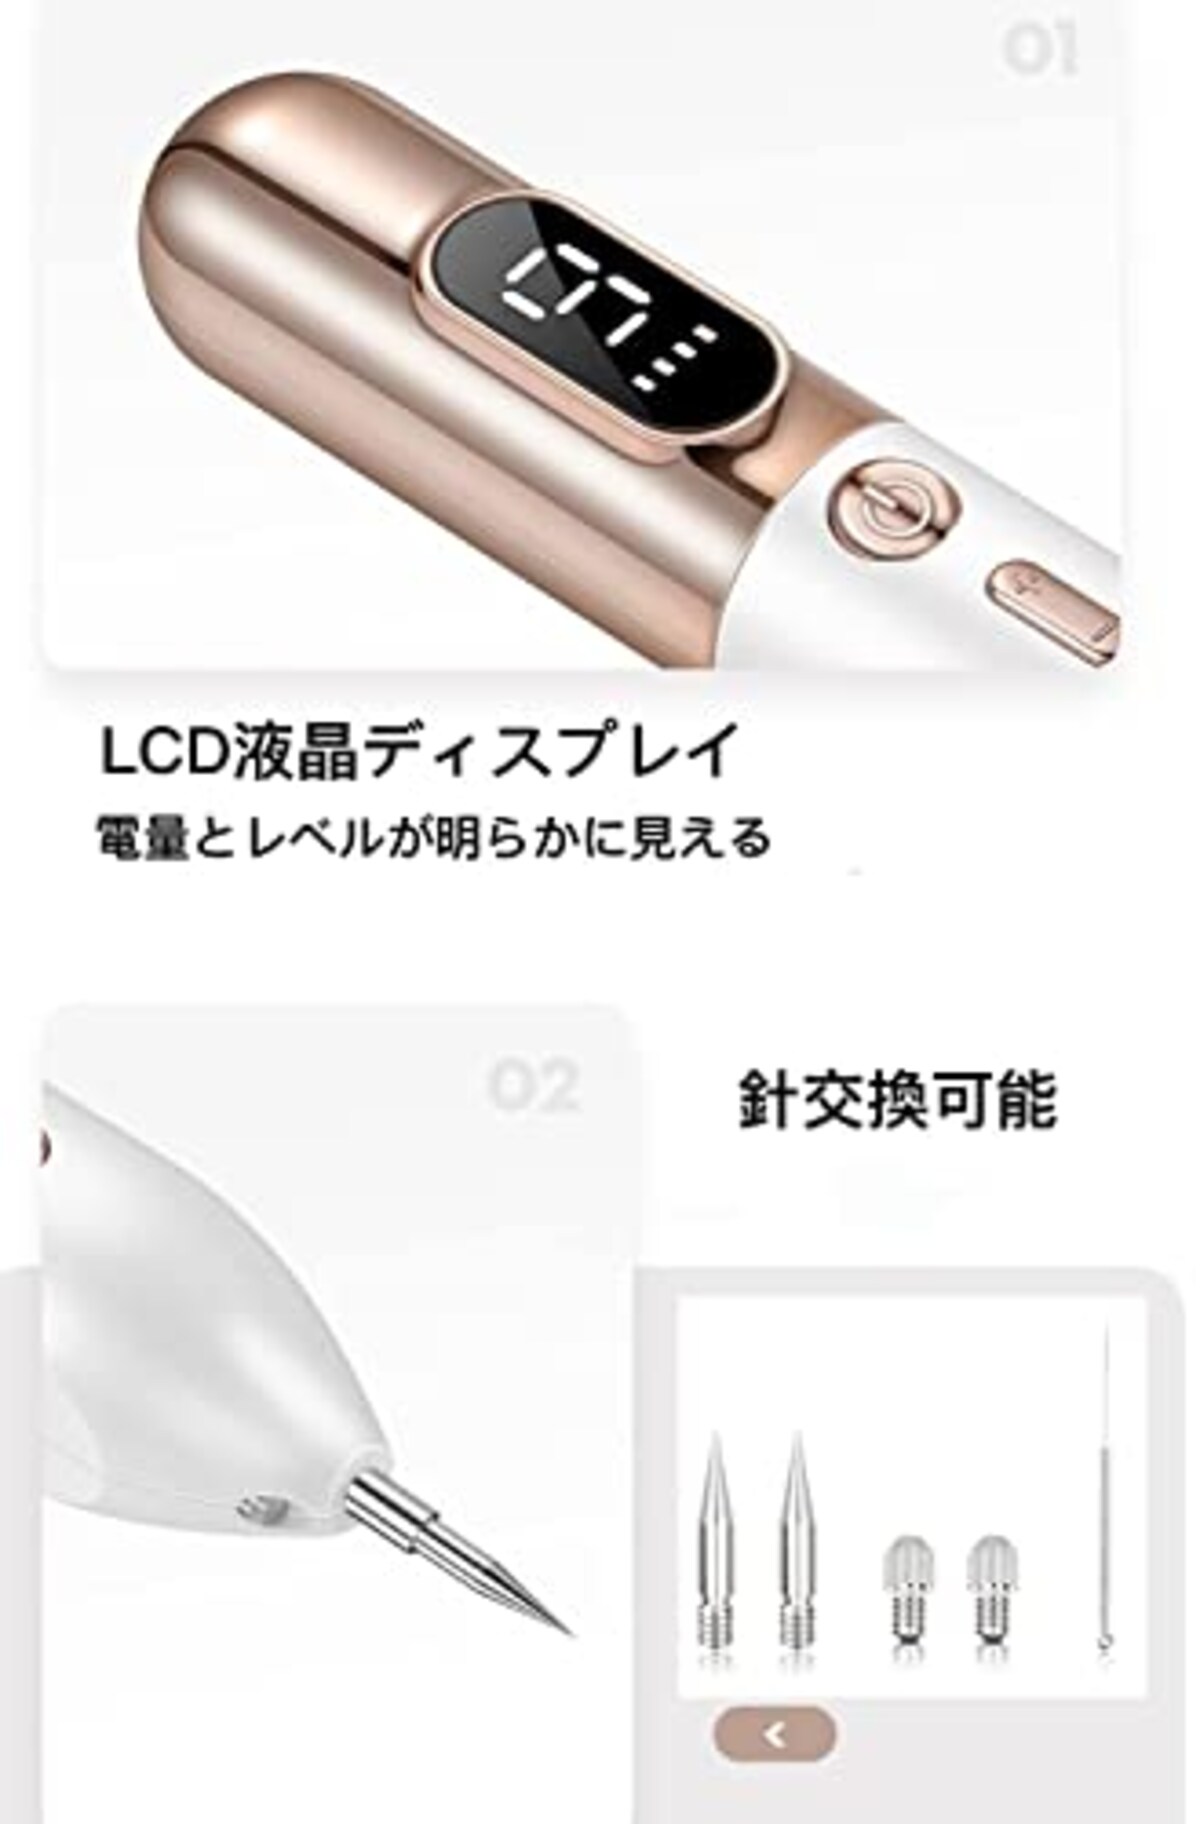  美顔器 家庭用 ９段階レベル USB充電 LED表示 照明ライト付き 美容器 美容器具 自宅美顔 男女兼用 日本語取扱説明書付き (ゴールド)画像3 